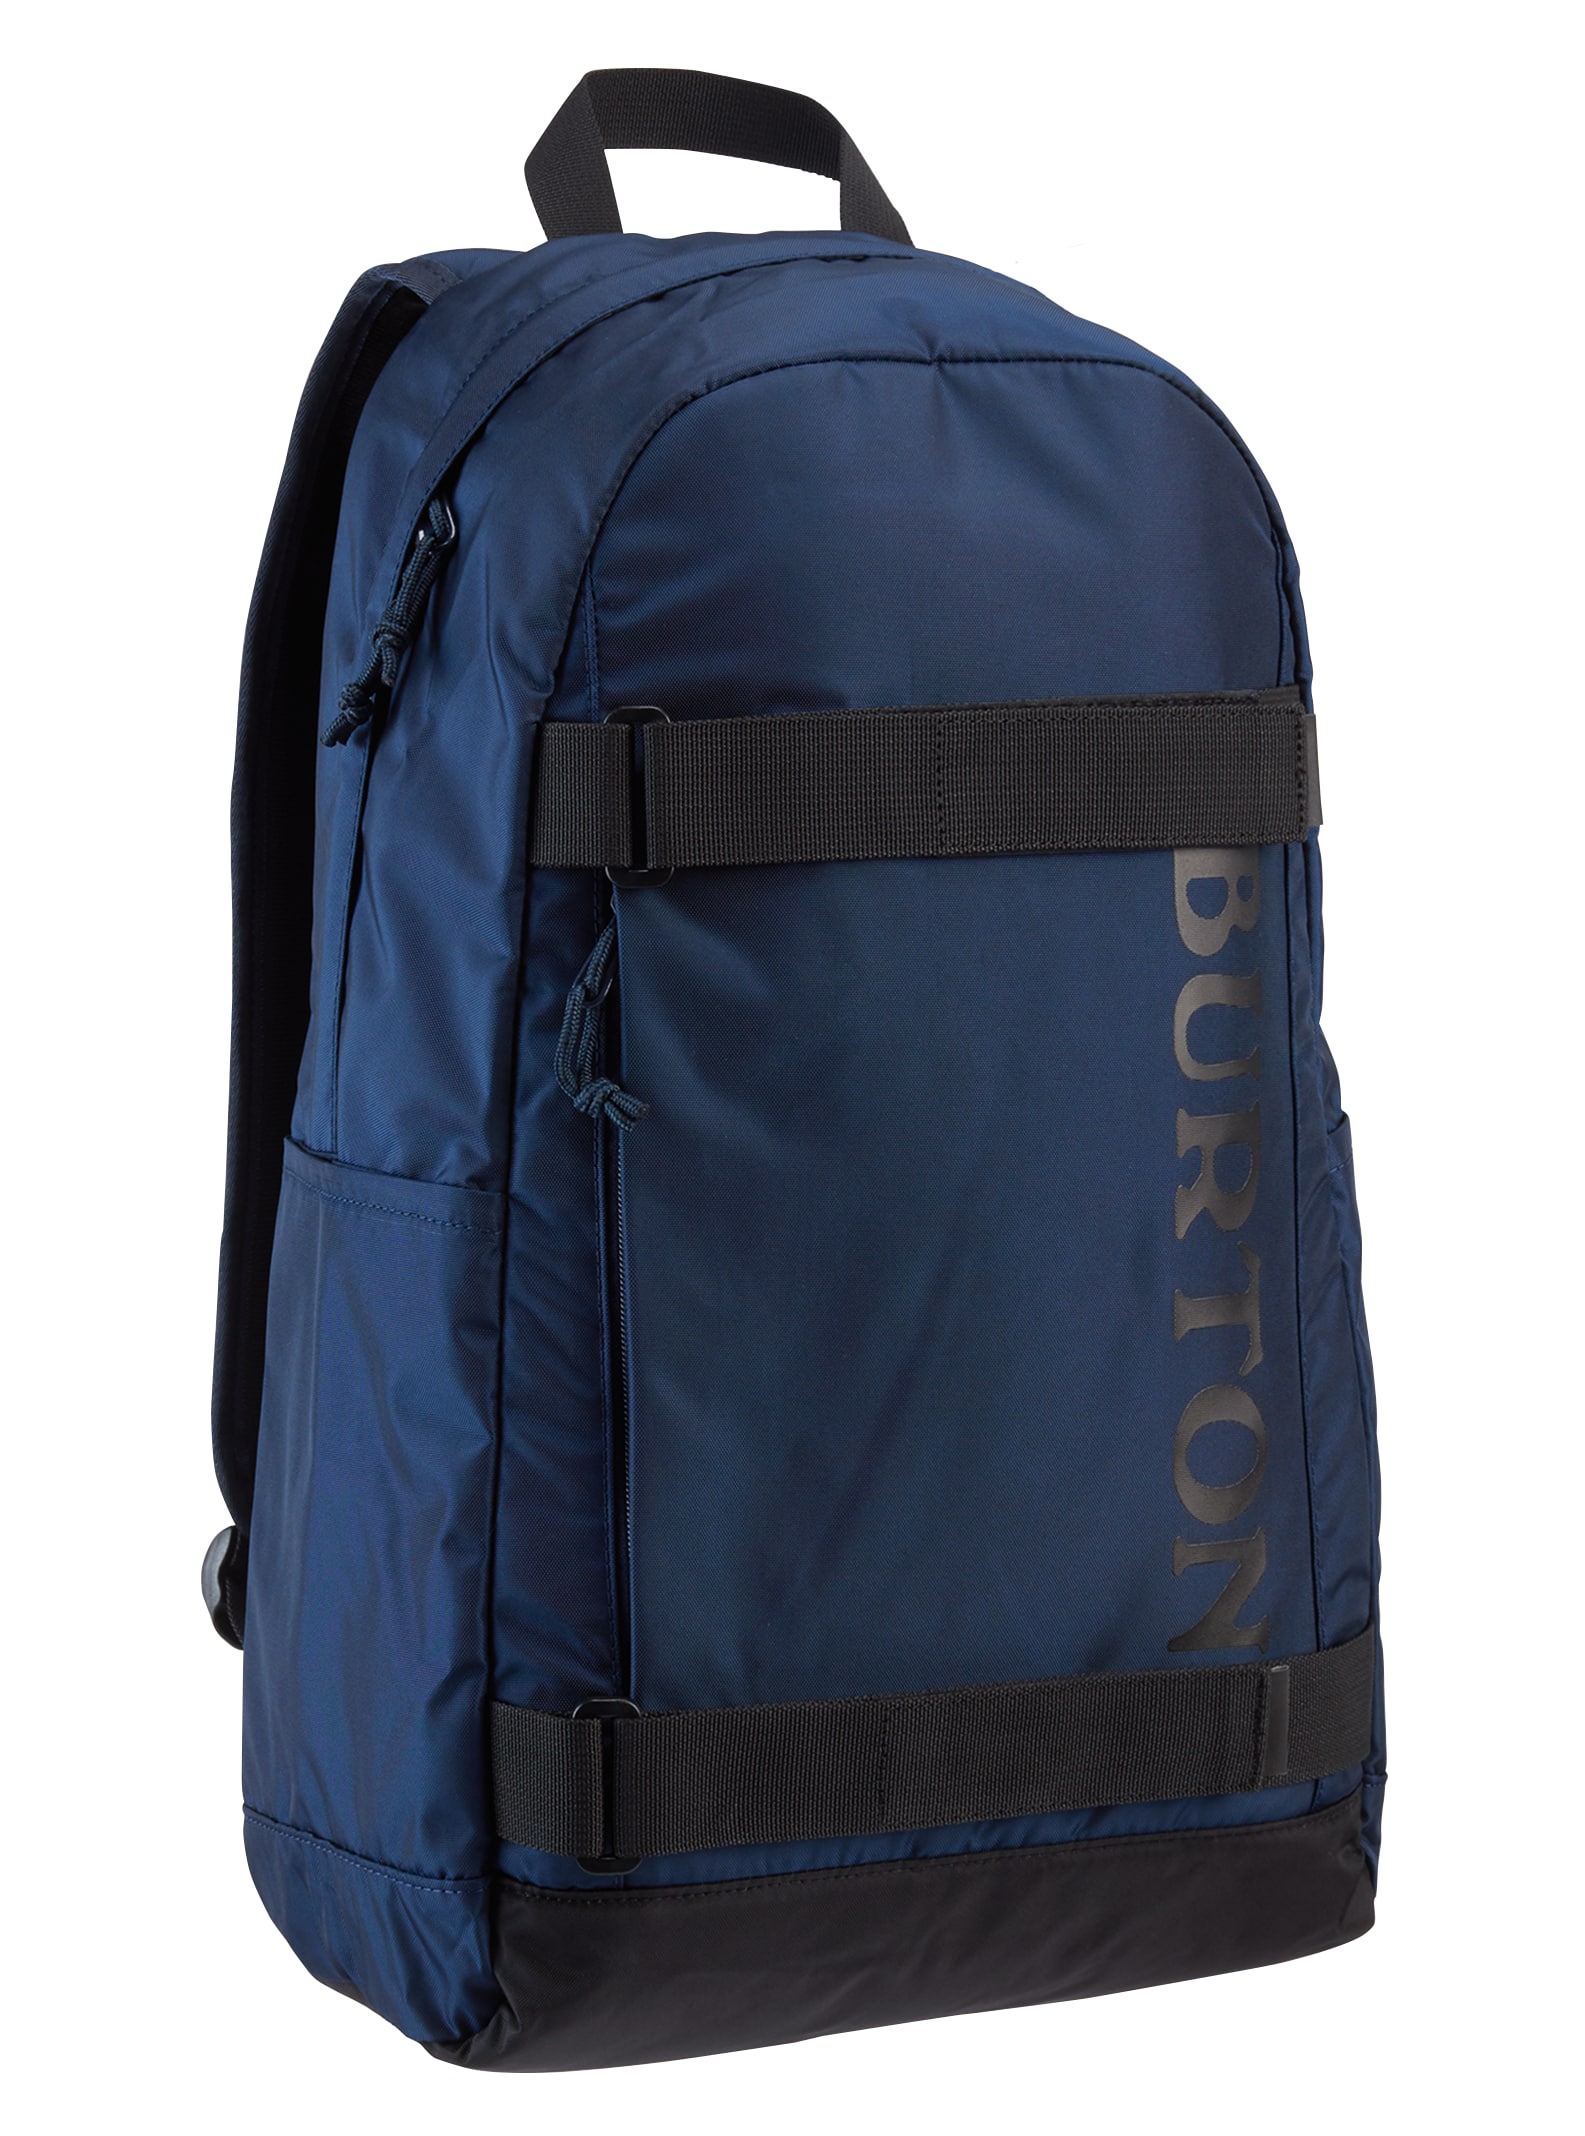 Burton Emphasis Rucksack Schule Sport Freizeit Laptop Tasche Backpack 17382102 